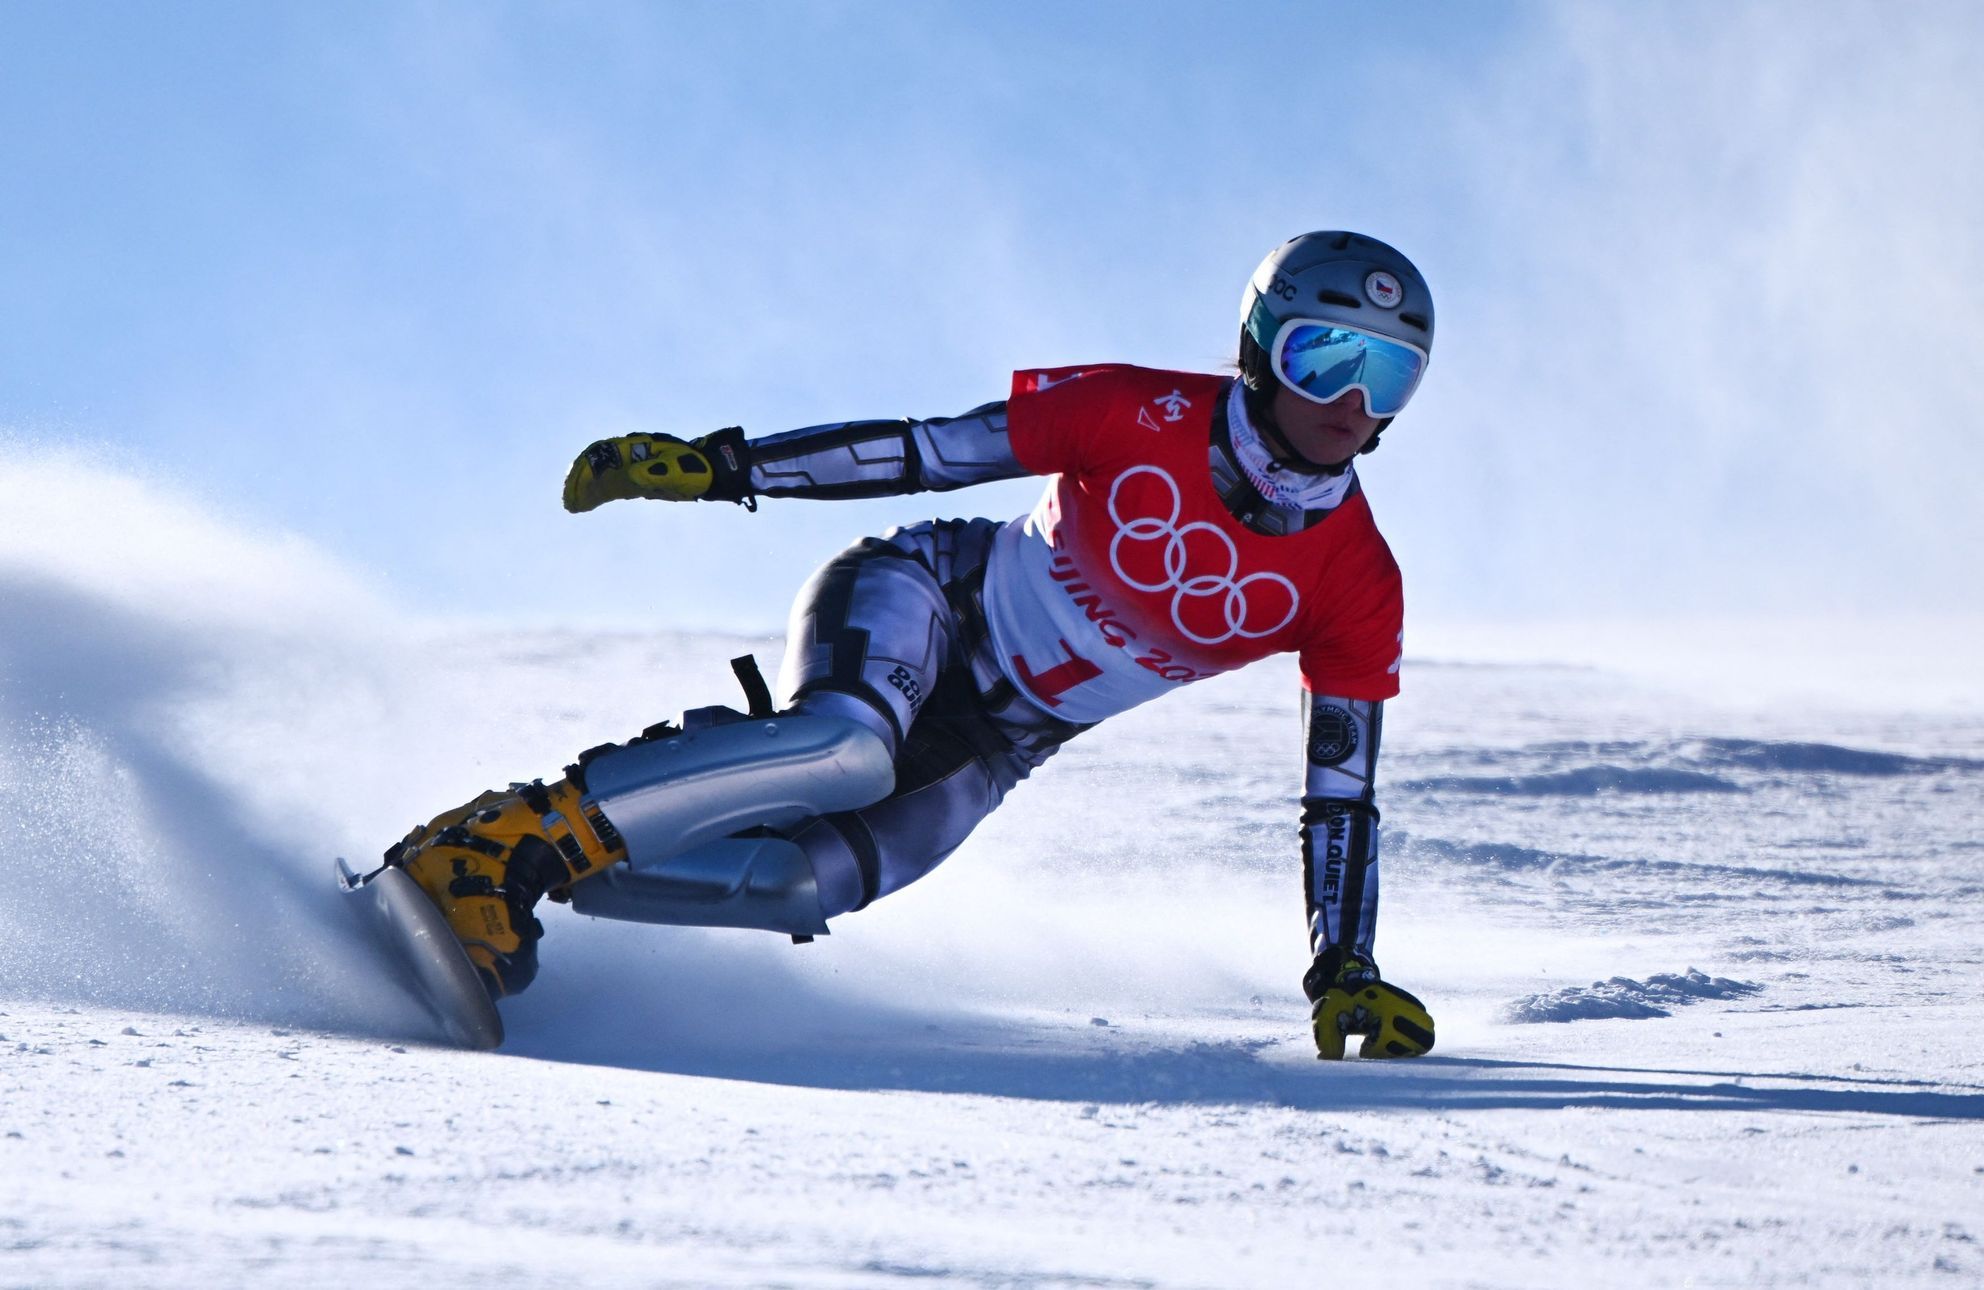 Décidez : Ledecká n’ira même pas aux championnats du monde de snowboard.  Malgré la pratique, il n’est pas autorisé à concourir